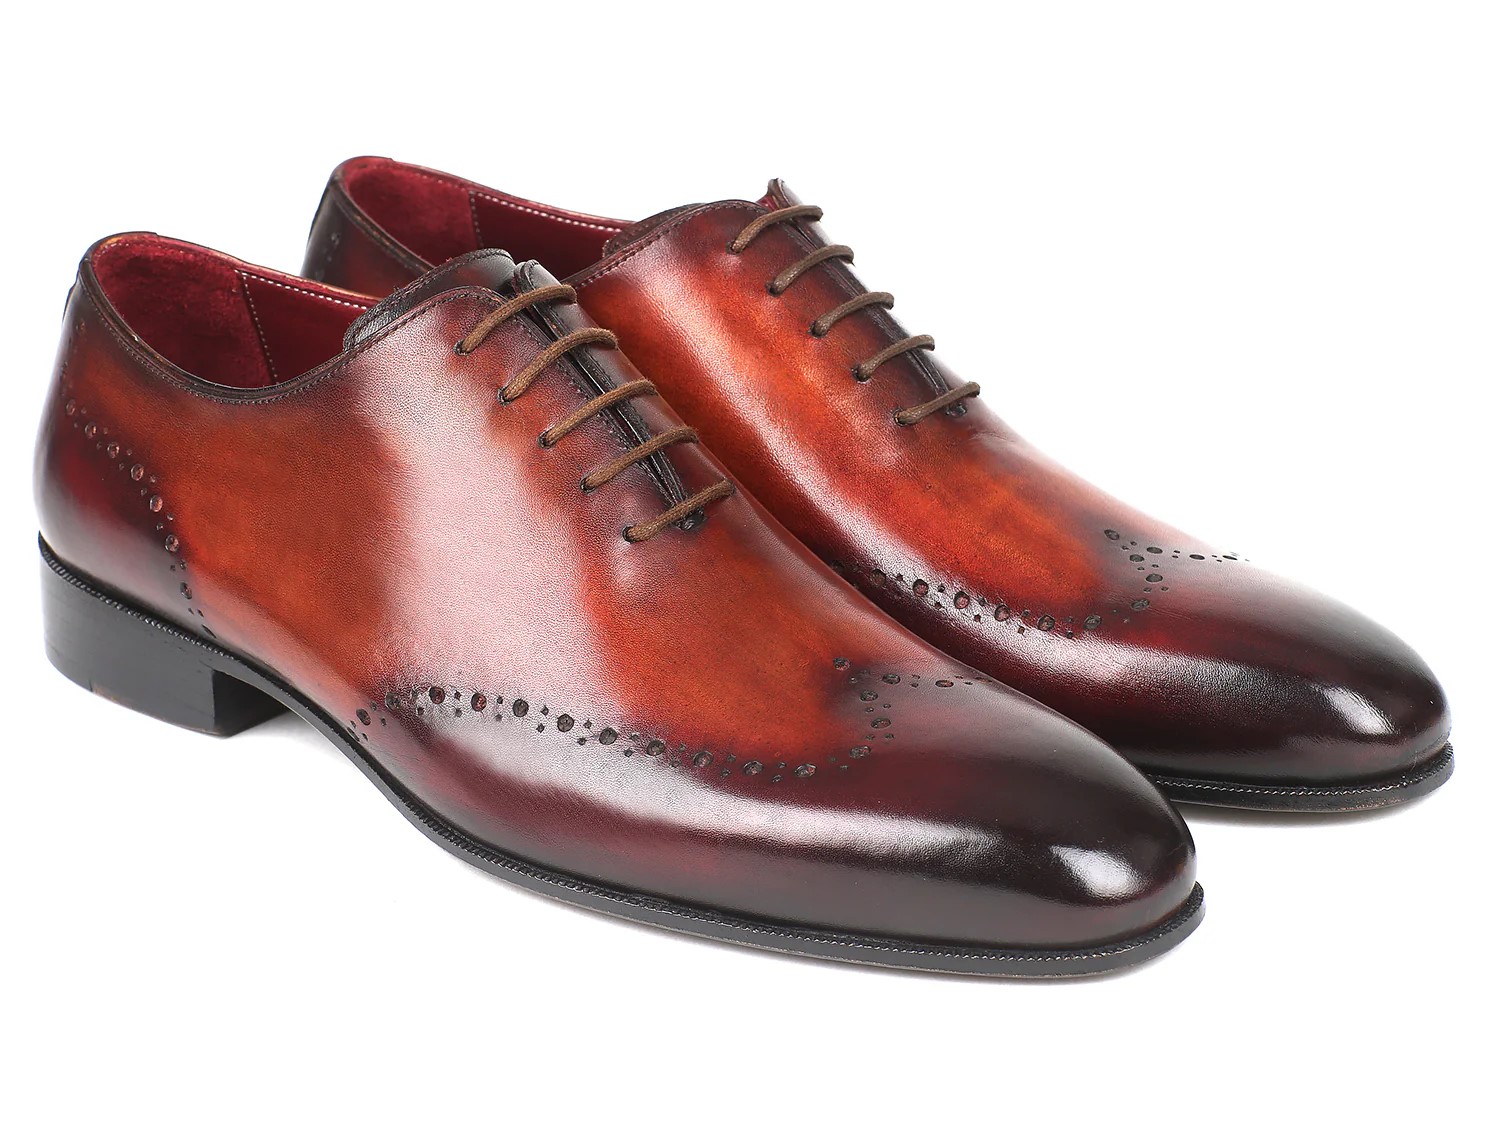 Paul Parkman Brown / Bordeaux Genuine Leather Men's Wingtip Oxford Dress Shoes 84BT76